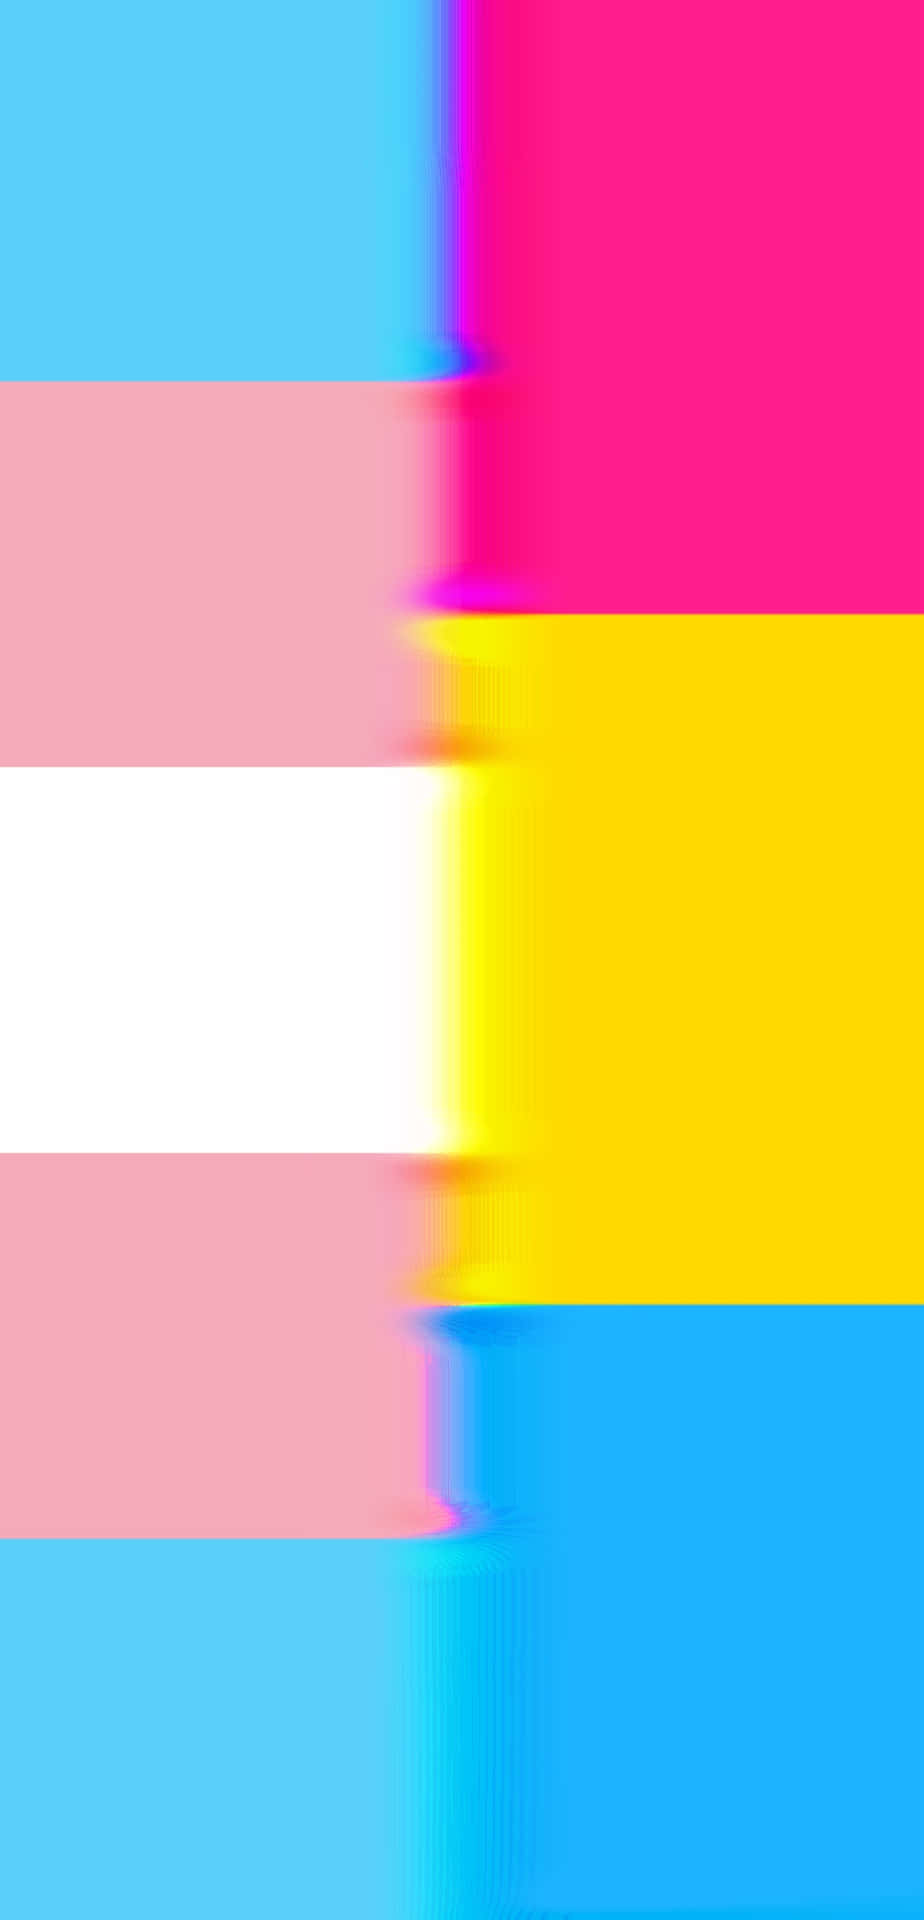 Transgenderflag Med Regnbuens Farver.